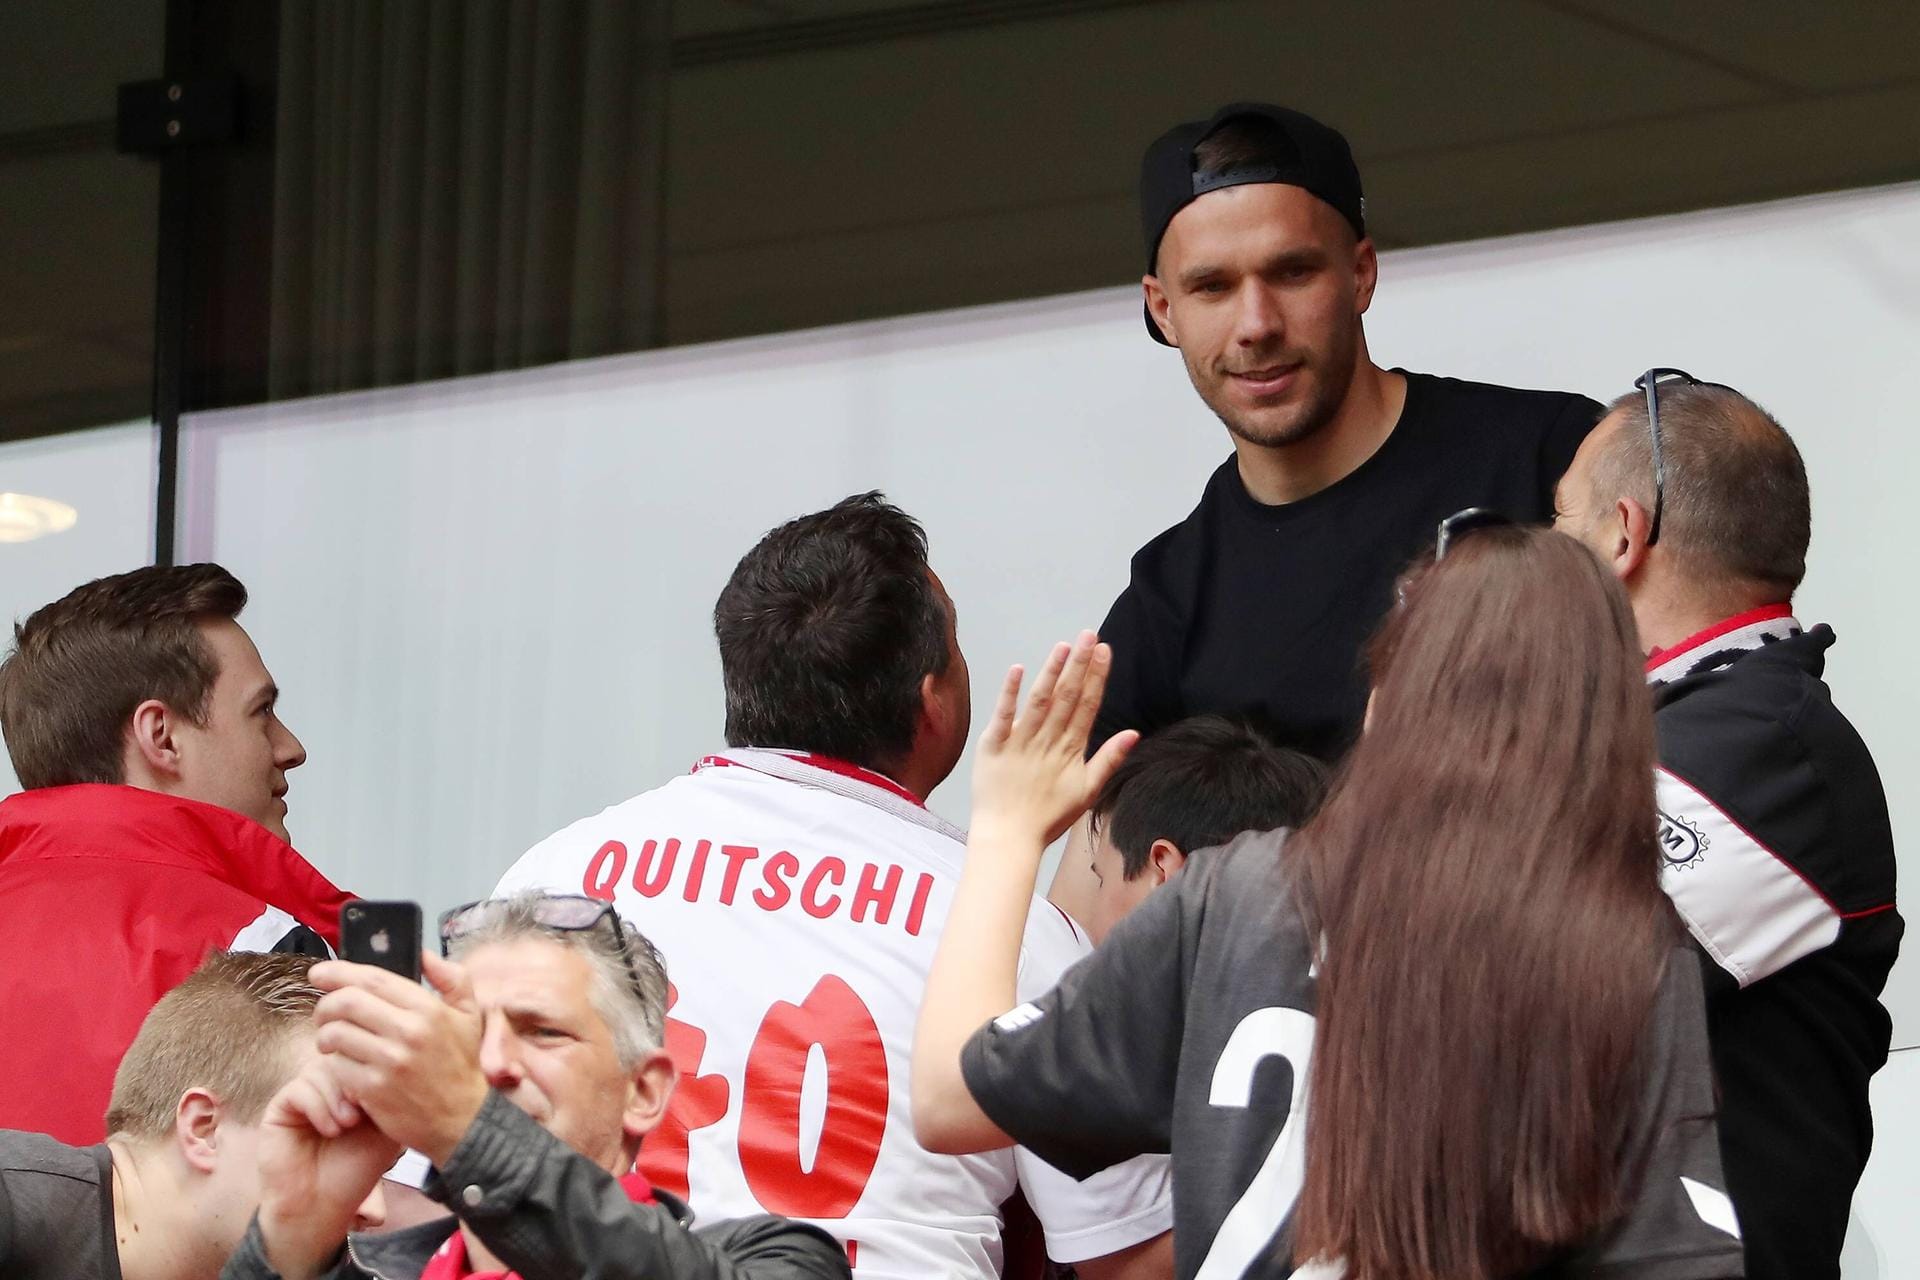 Hoher Besuch in Köln: Lukas Podolski schaut das Spiel gegen Mainz und gibt fleißig Autogramme.